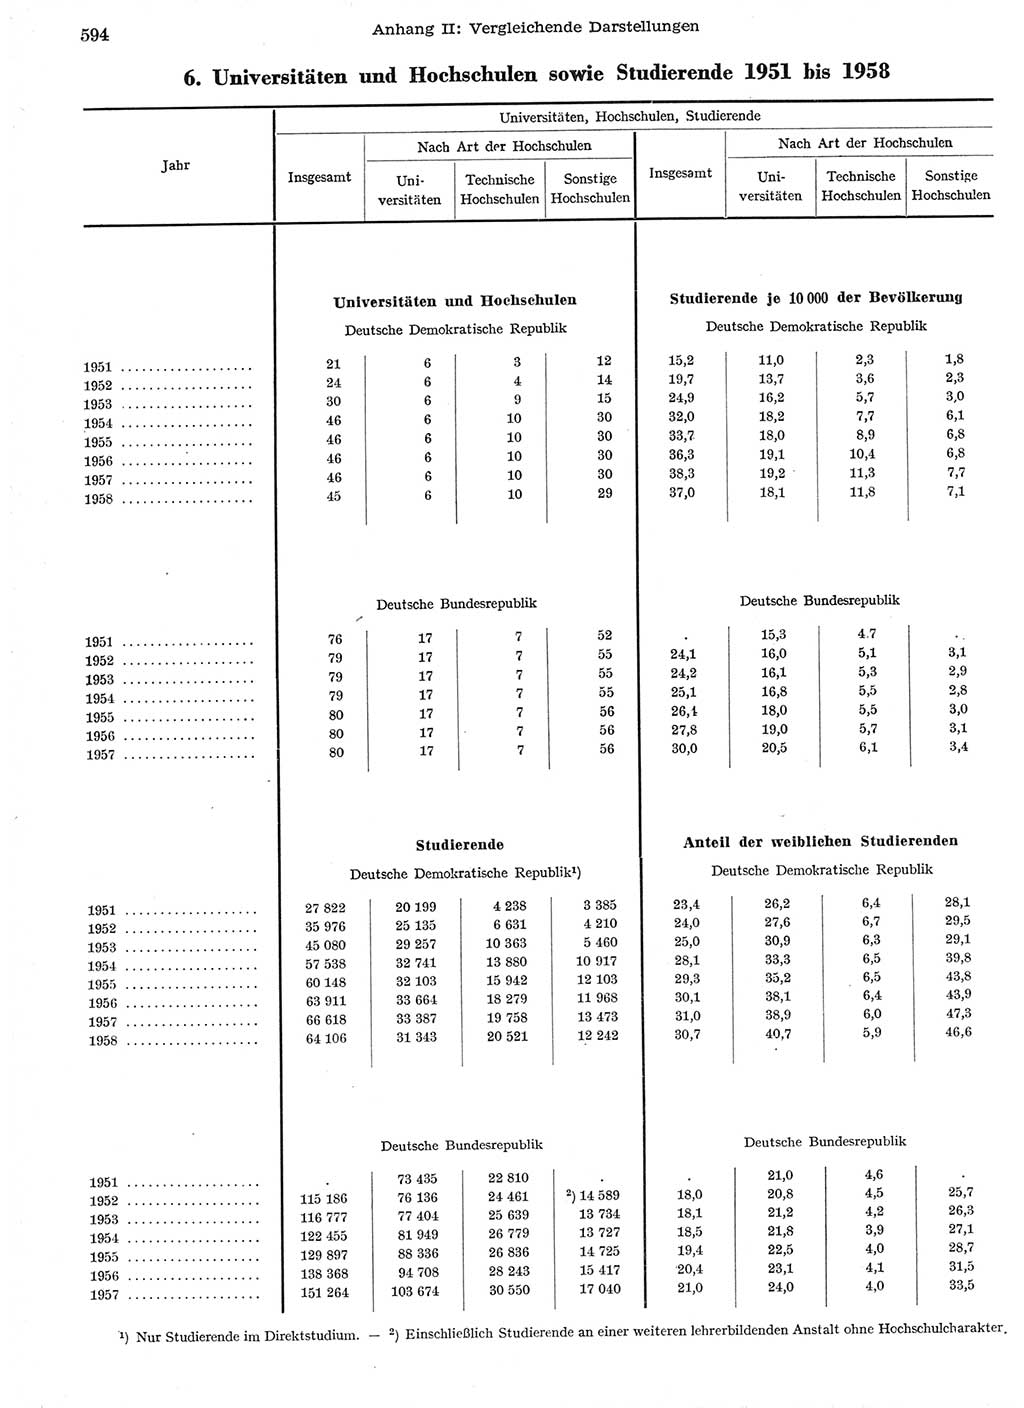 Statistisches Jahrbuch der Deutschen Demokratischen Republik (DDR) 1958, Seite 594 (Stat. Jb. DDR 1958, S. 594)